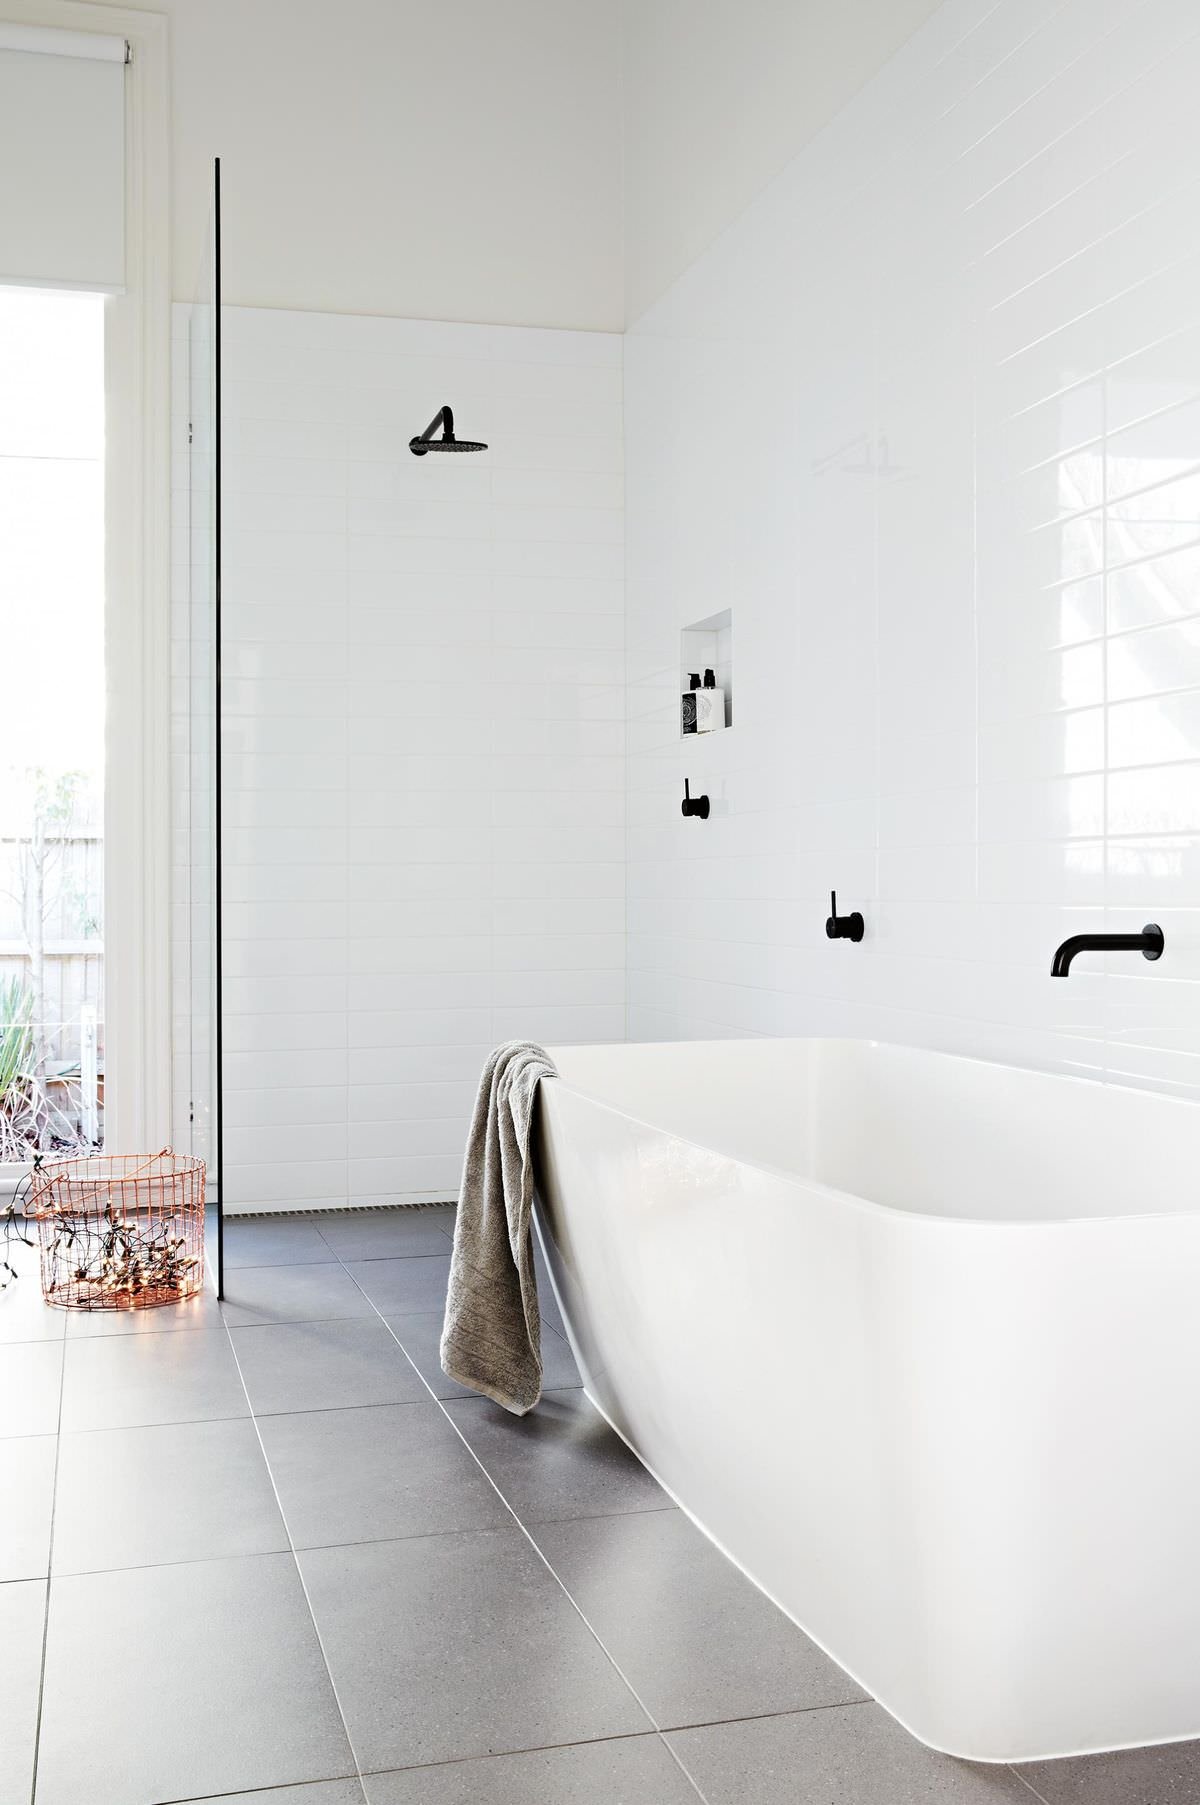 La scelta della rubinetteria nera conferisce a questo bagno bianco lucido un aspetto sottile ma dinamico. Il pavimento in piastrelle grigio aggiunge calore e profondità allo spazio